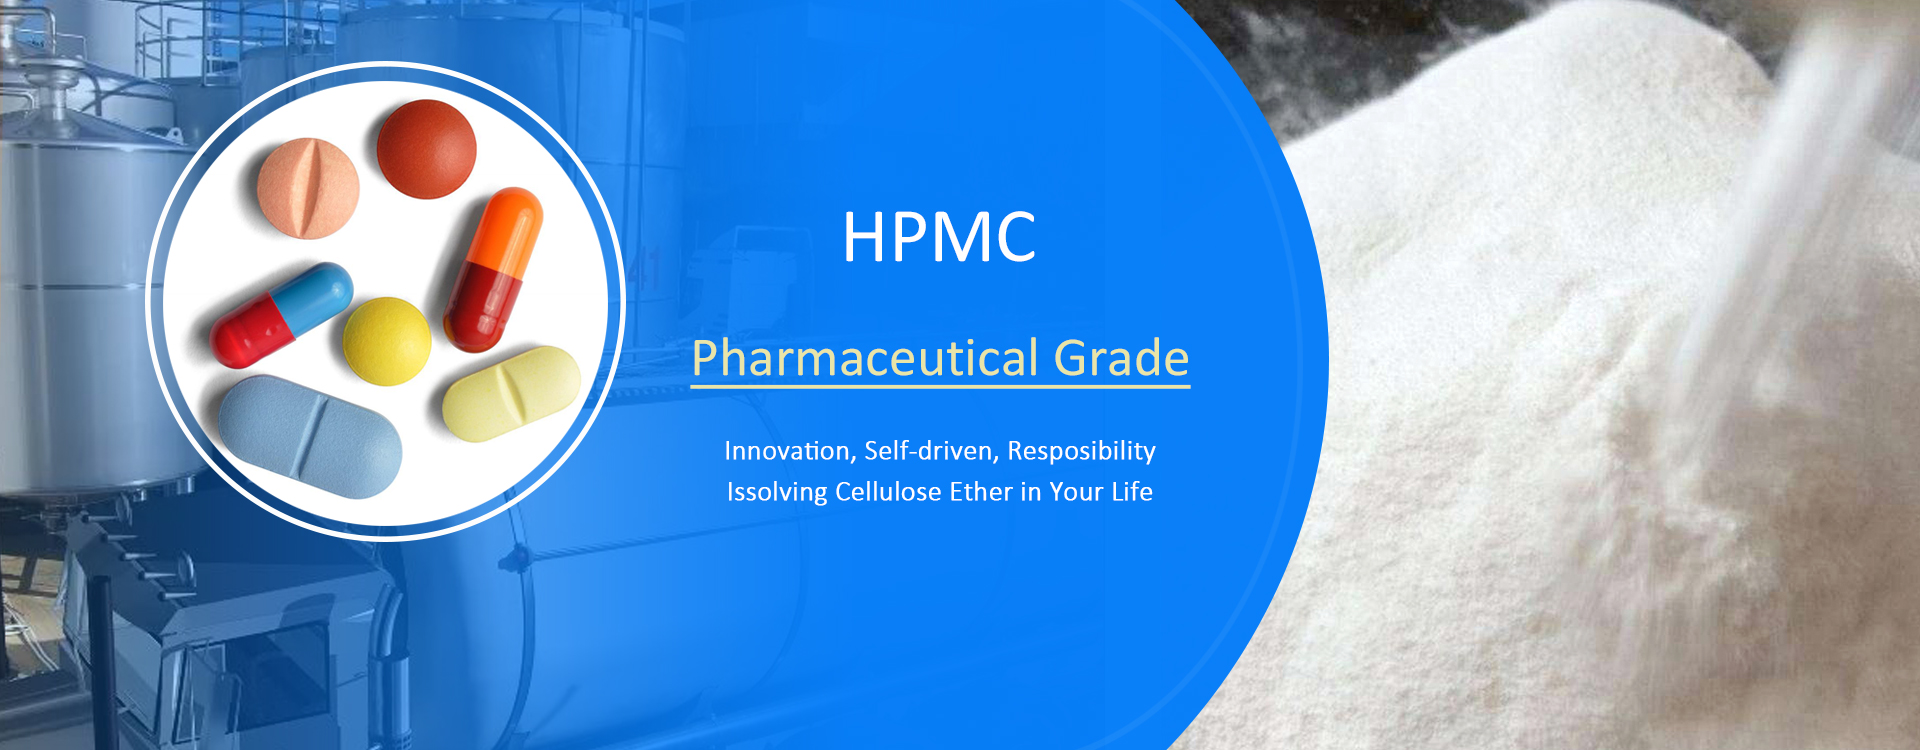 HPMC-For-Pharmaceutical-Grade-004